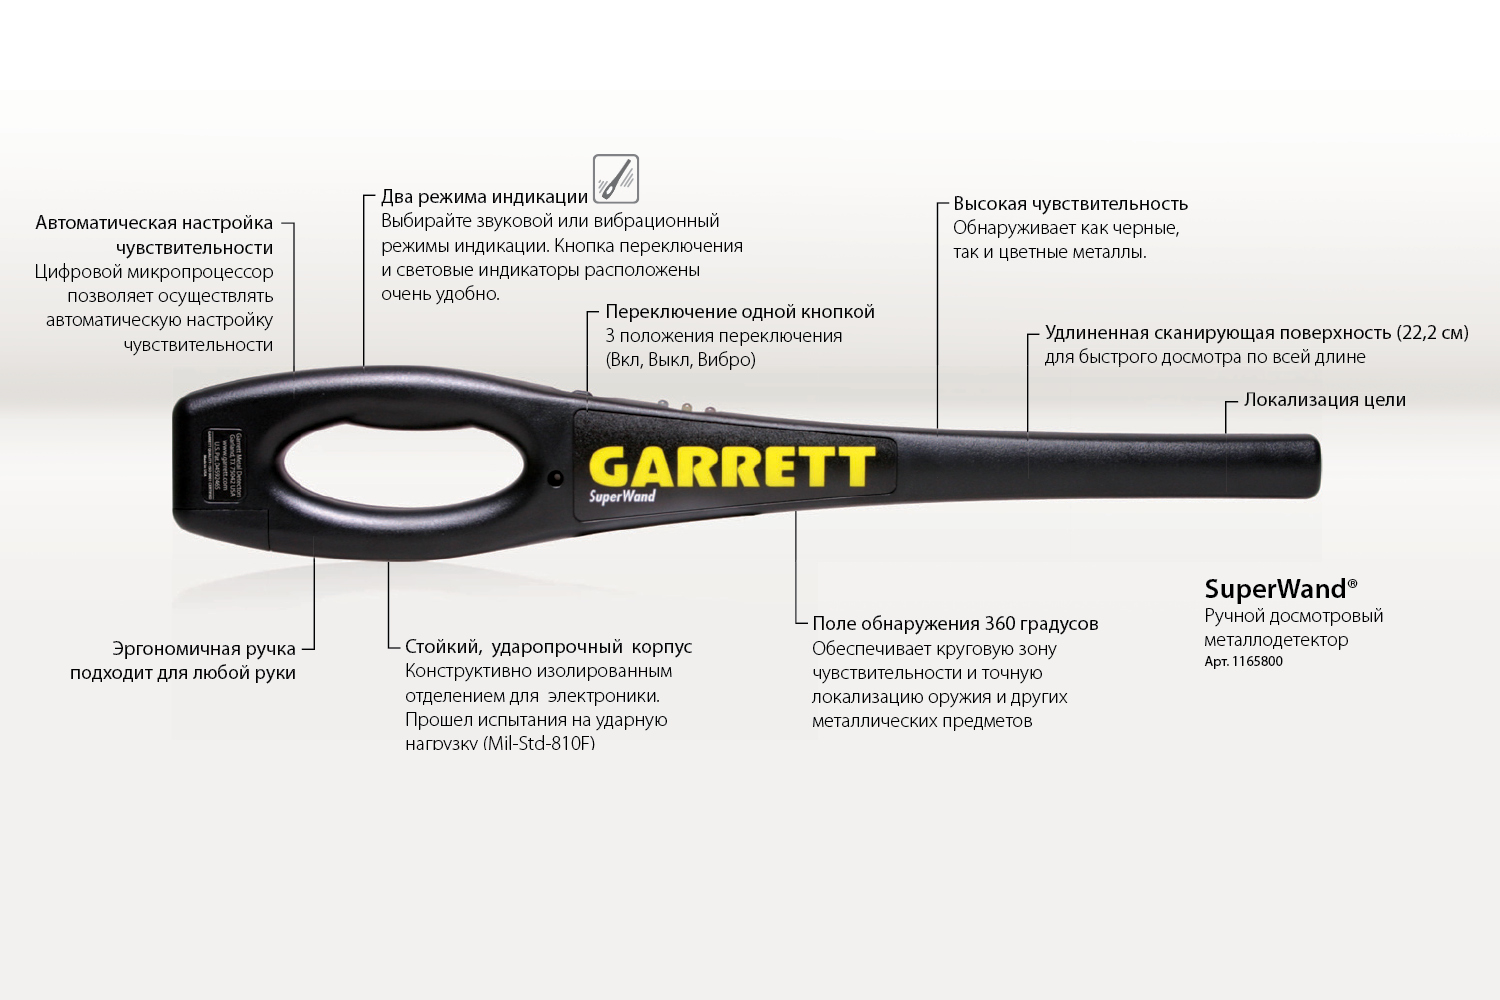 Органы управления ручного досмотрового металлодетектора GARRETT SUPER WAND